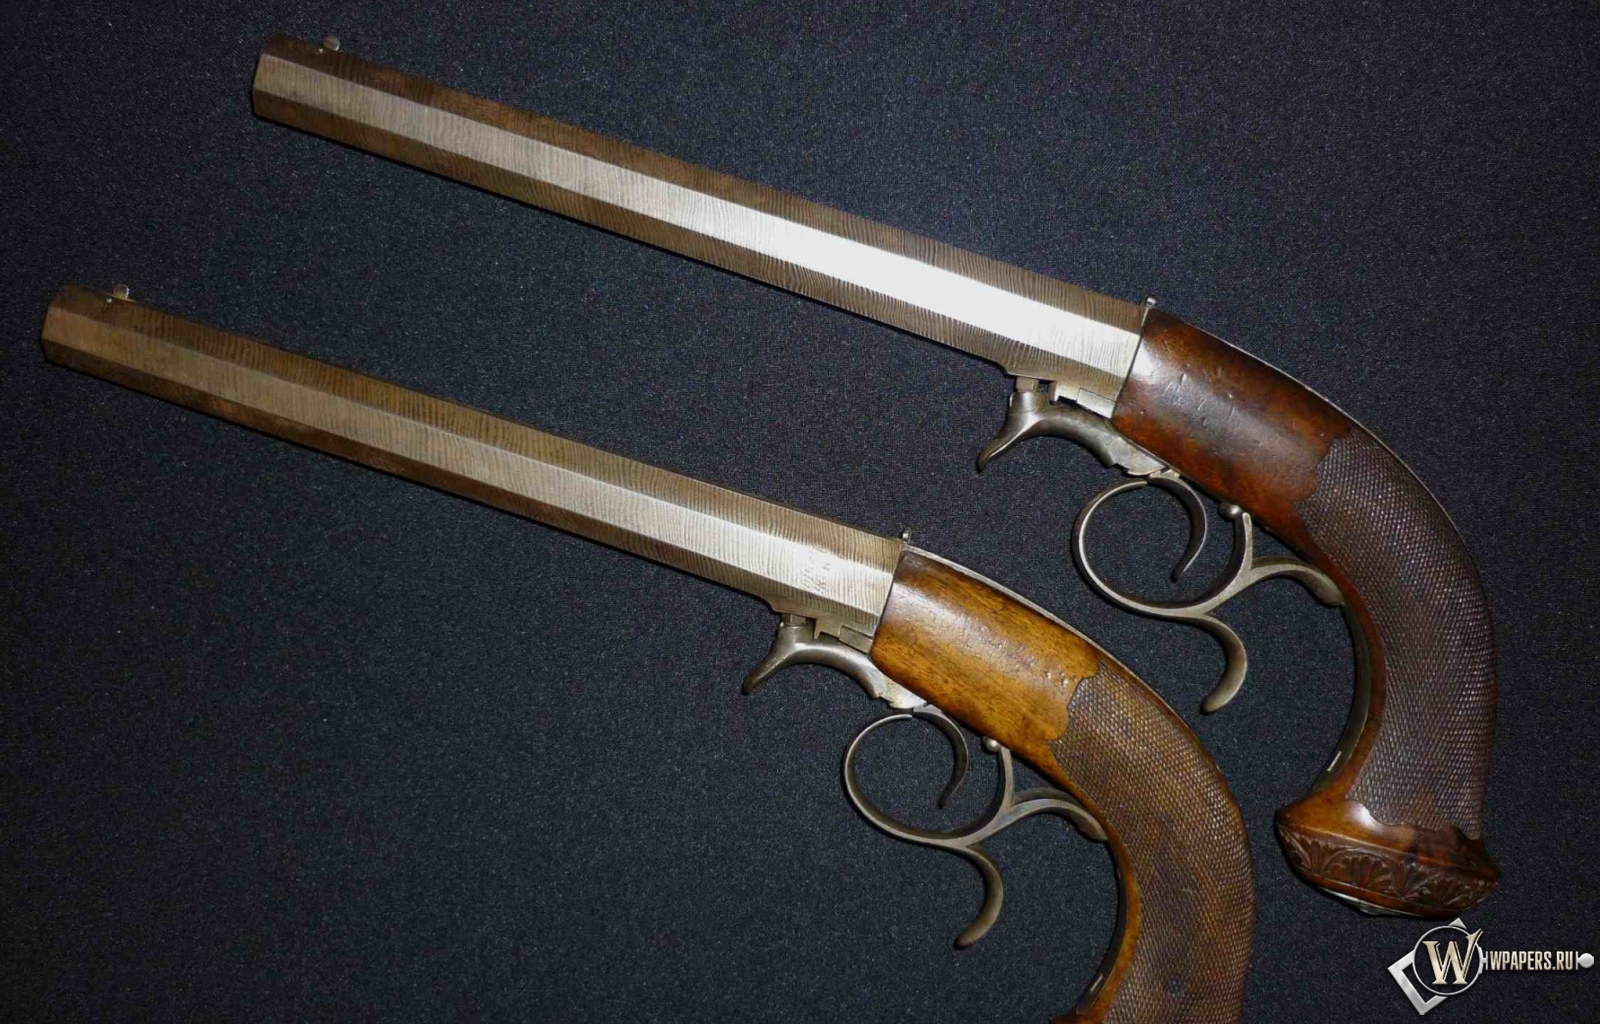 Дуэльные пистолеты 40-50 годы XIX века 1600x1024